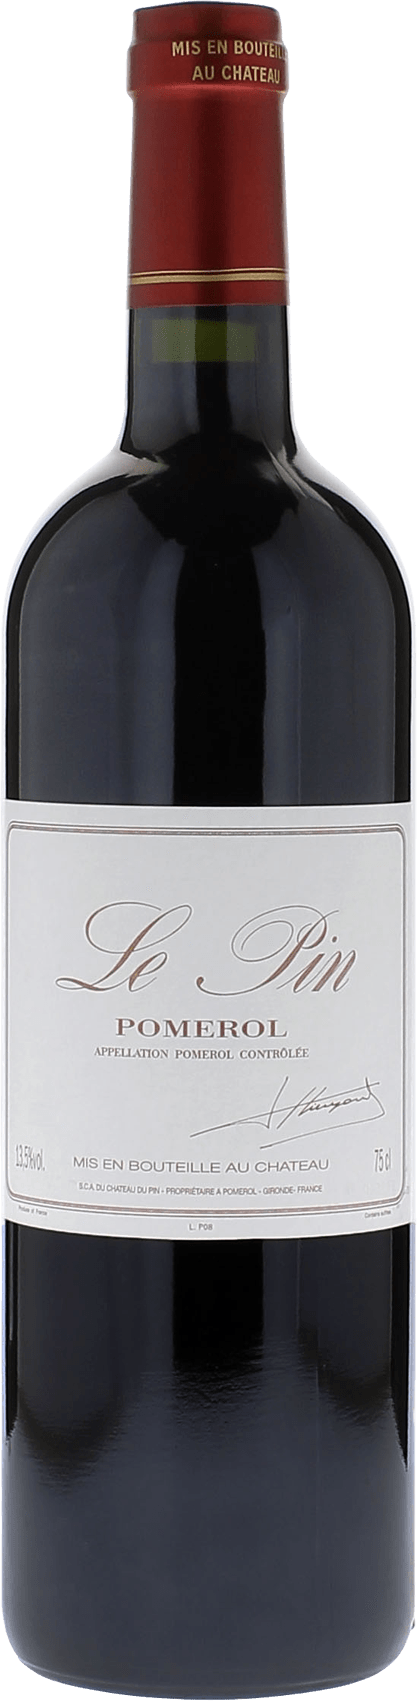 Le pin 2019  Pomerol, Bordeaux rouge